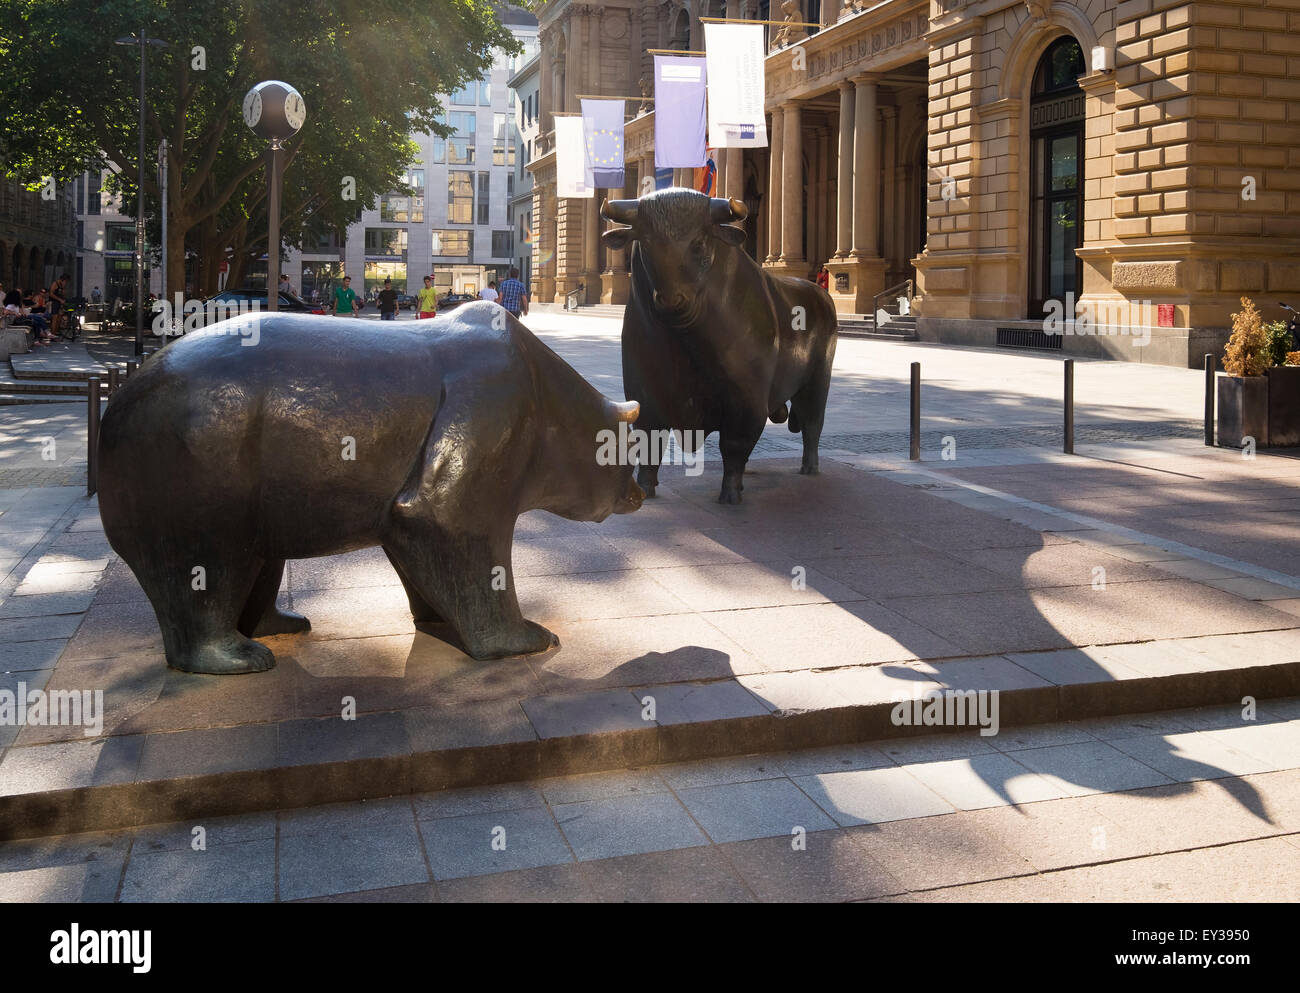 Sculture in bronzo di bull e bear, piazza della borsa, Frankfurt am Main, Hesse, Germania Foto Stock